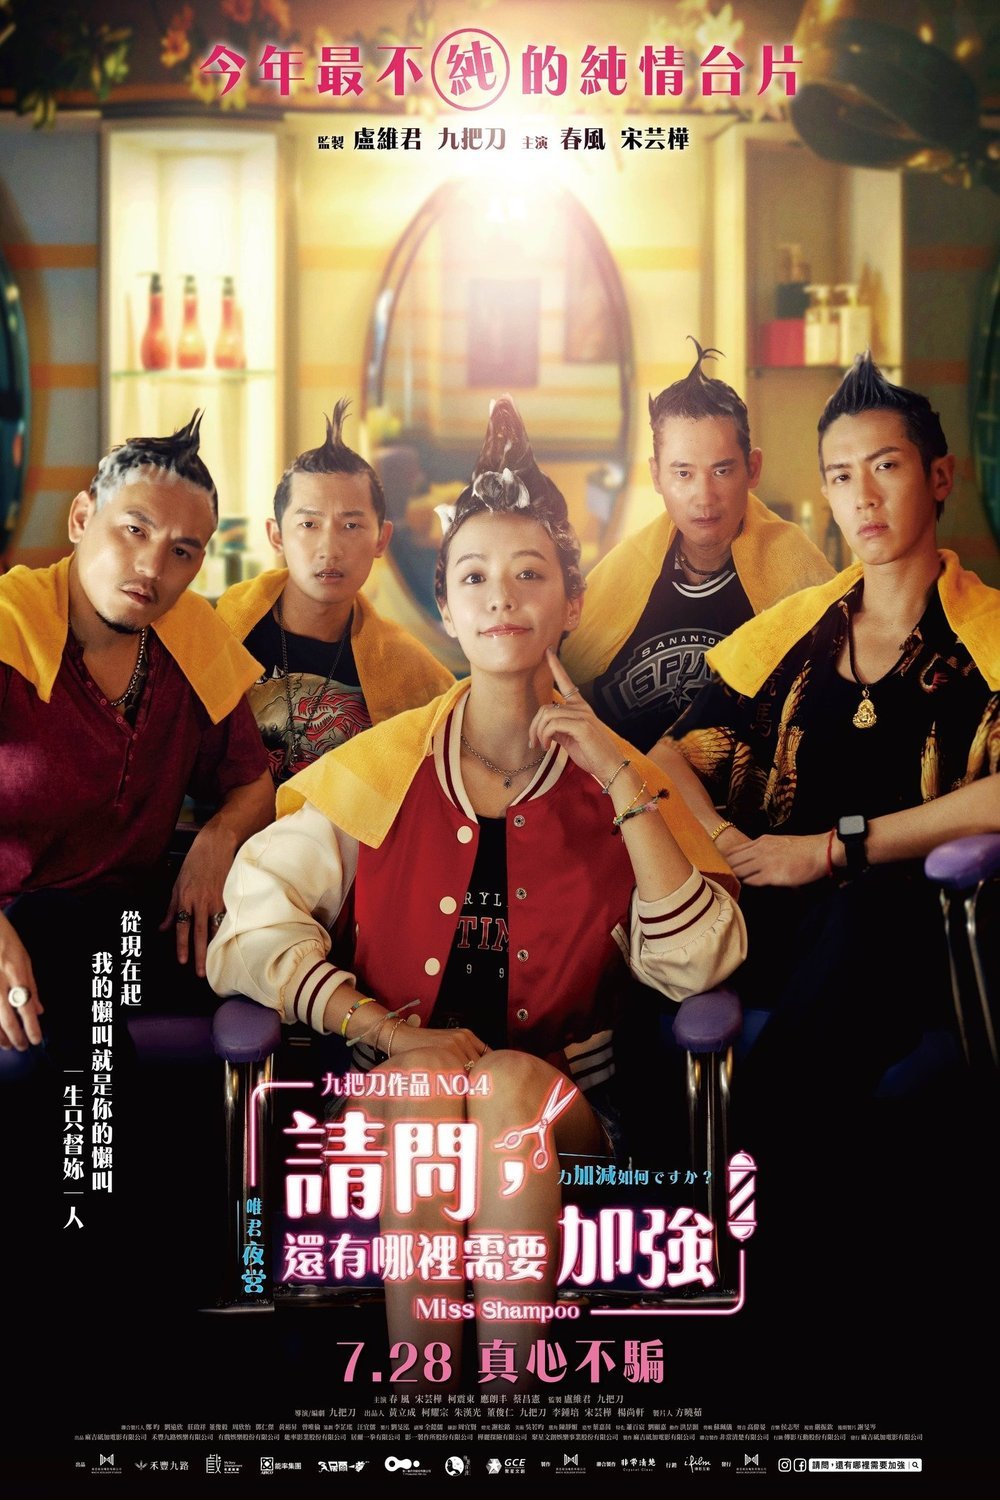 Mandarin poster of the movie Qing wen hai you na li xu yao jia qiang